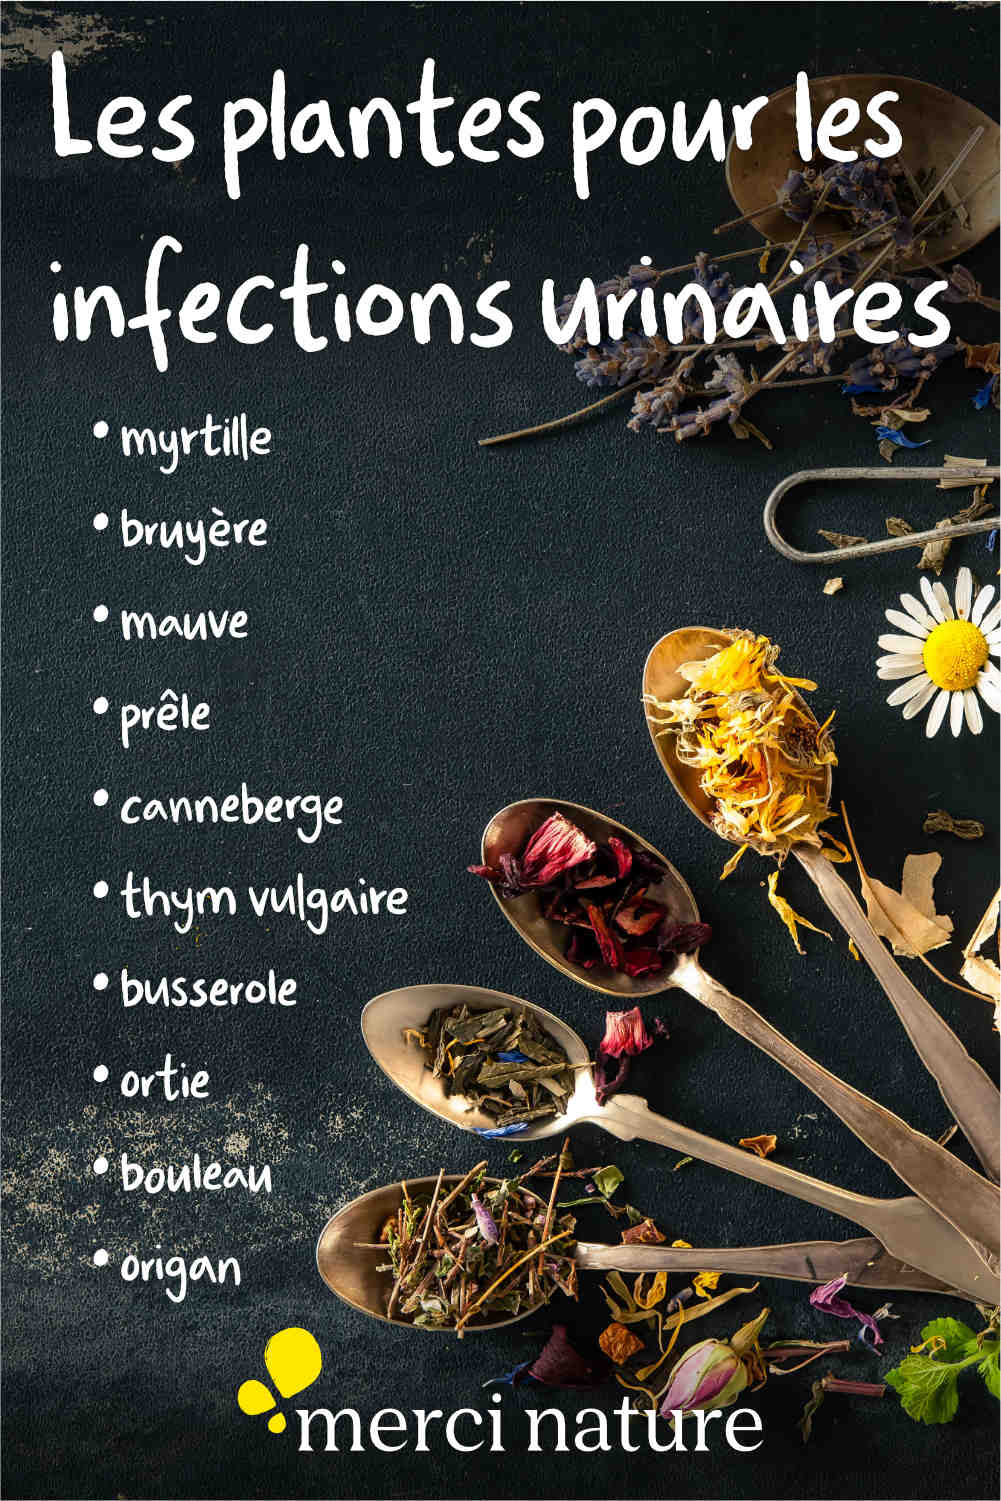 Liste de plantes pour lutter contre les infections urinaires.